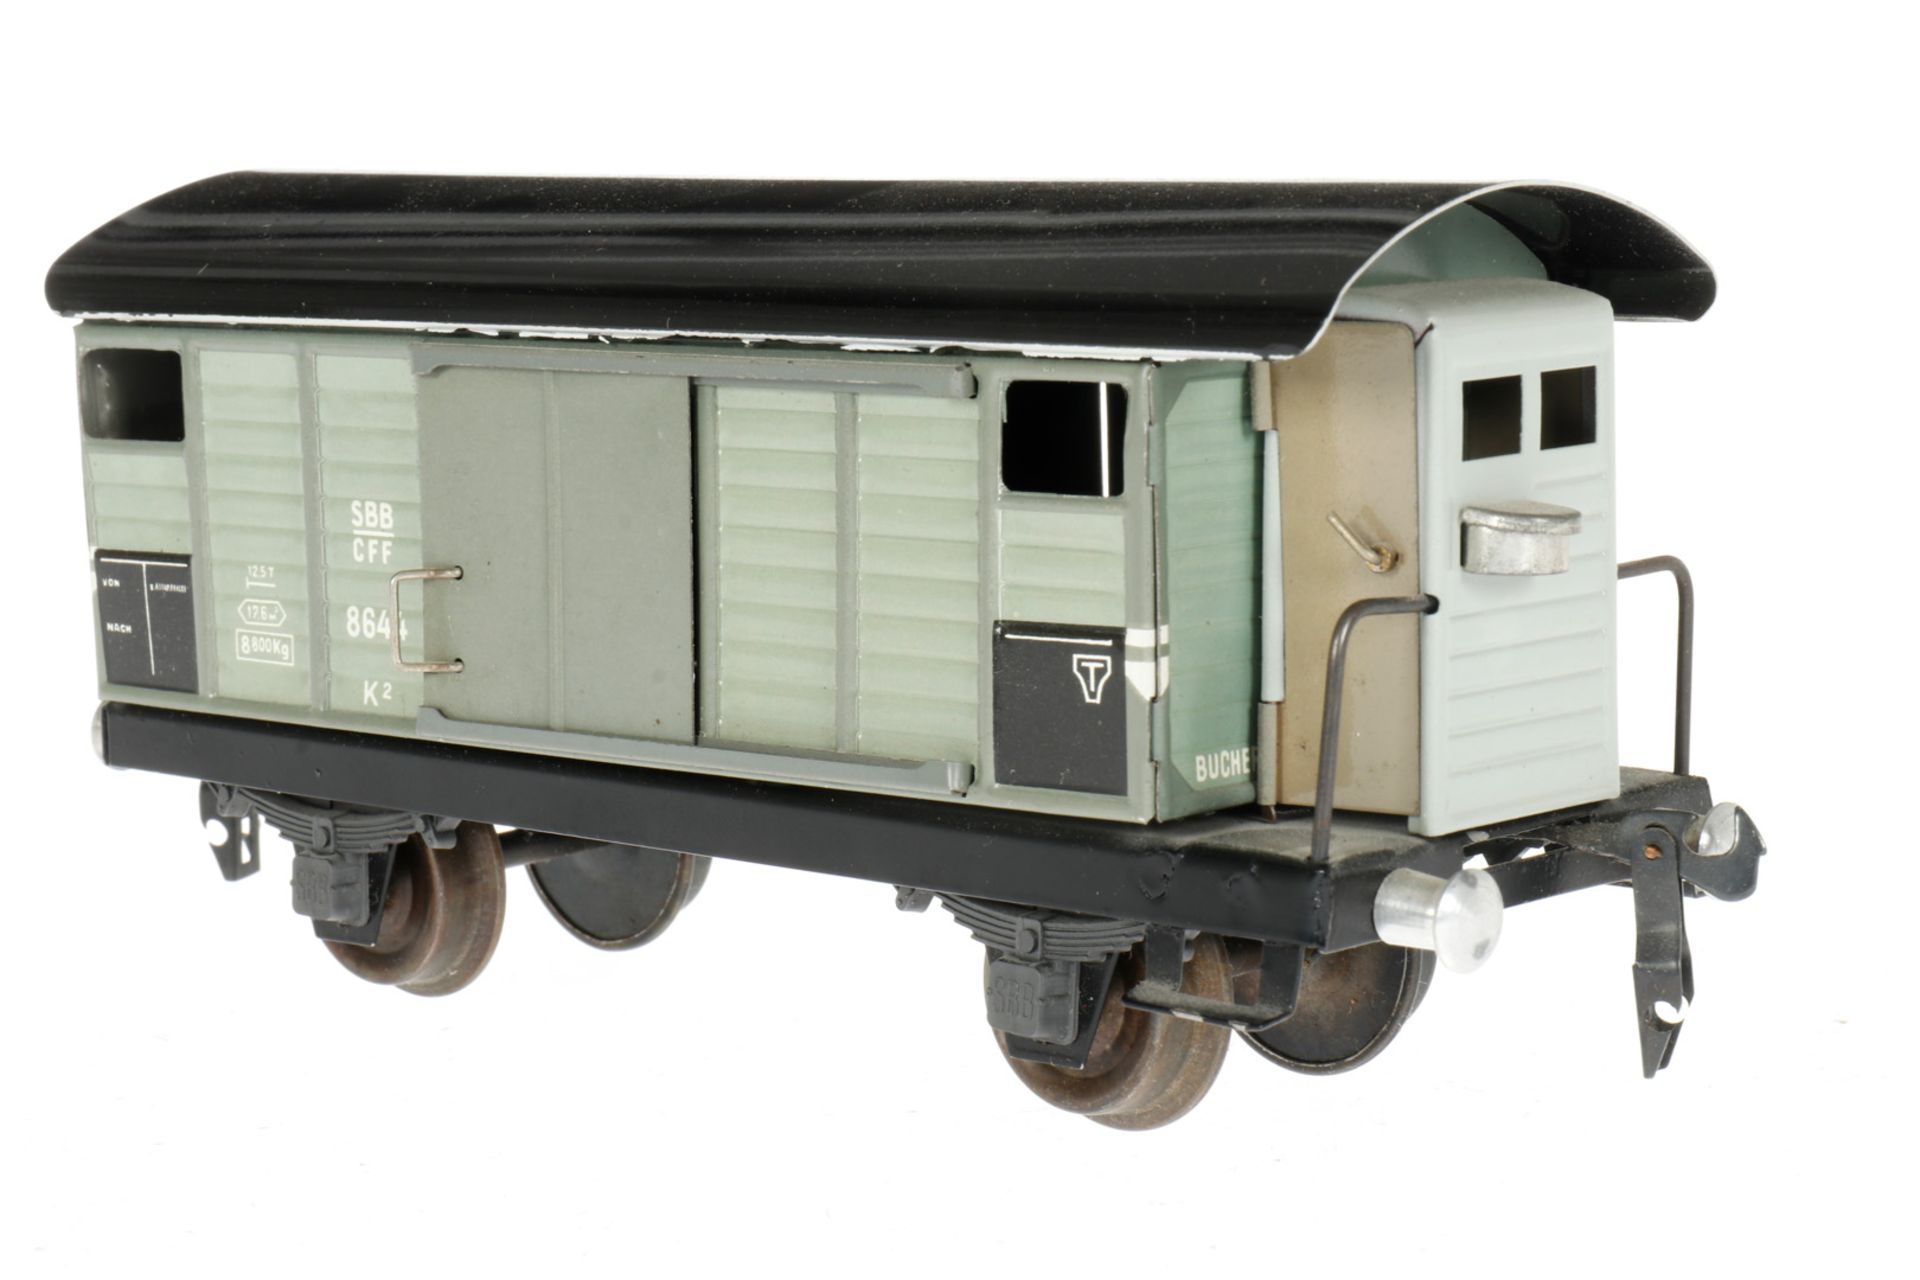 Buco gedeckter Güterwagen 8644, S 0, hellgrau, L 18, Z 3 - Bild 3 aus 4